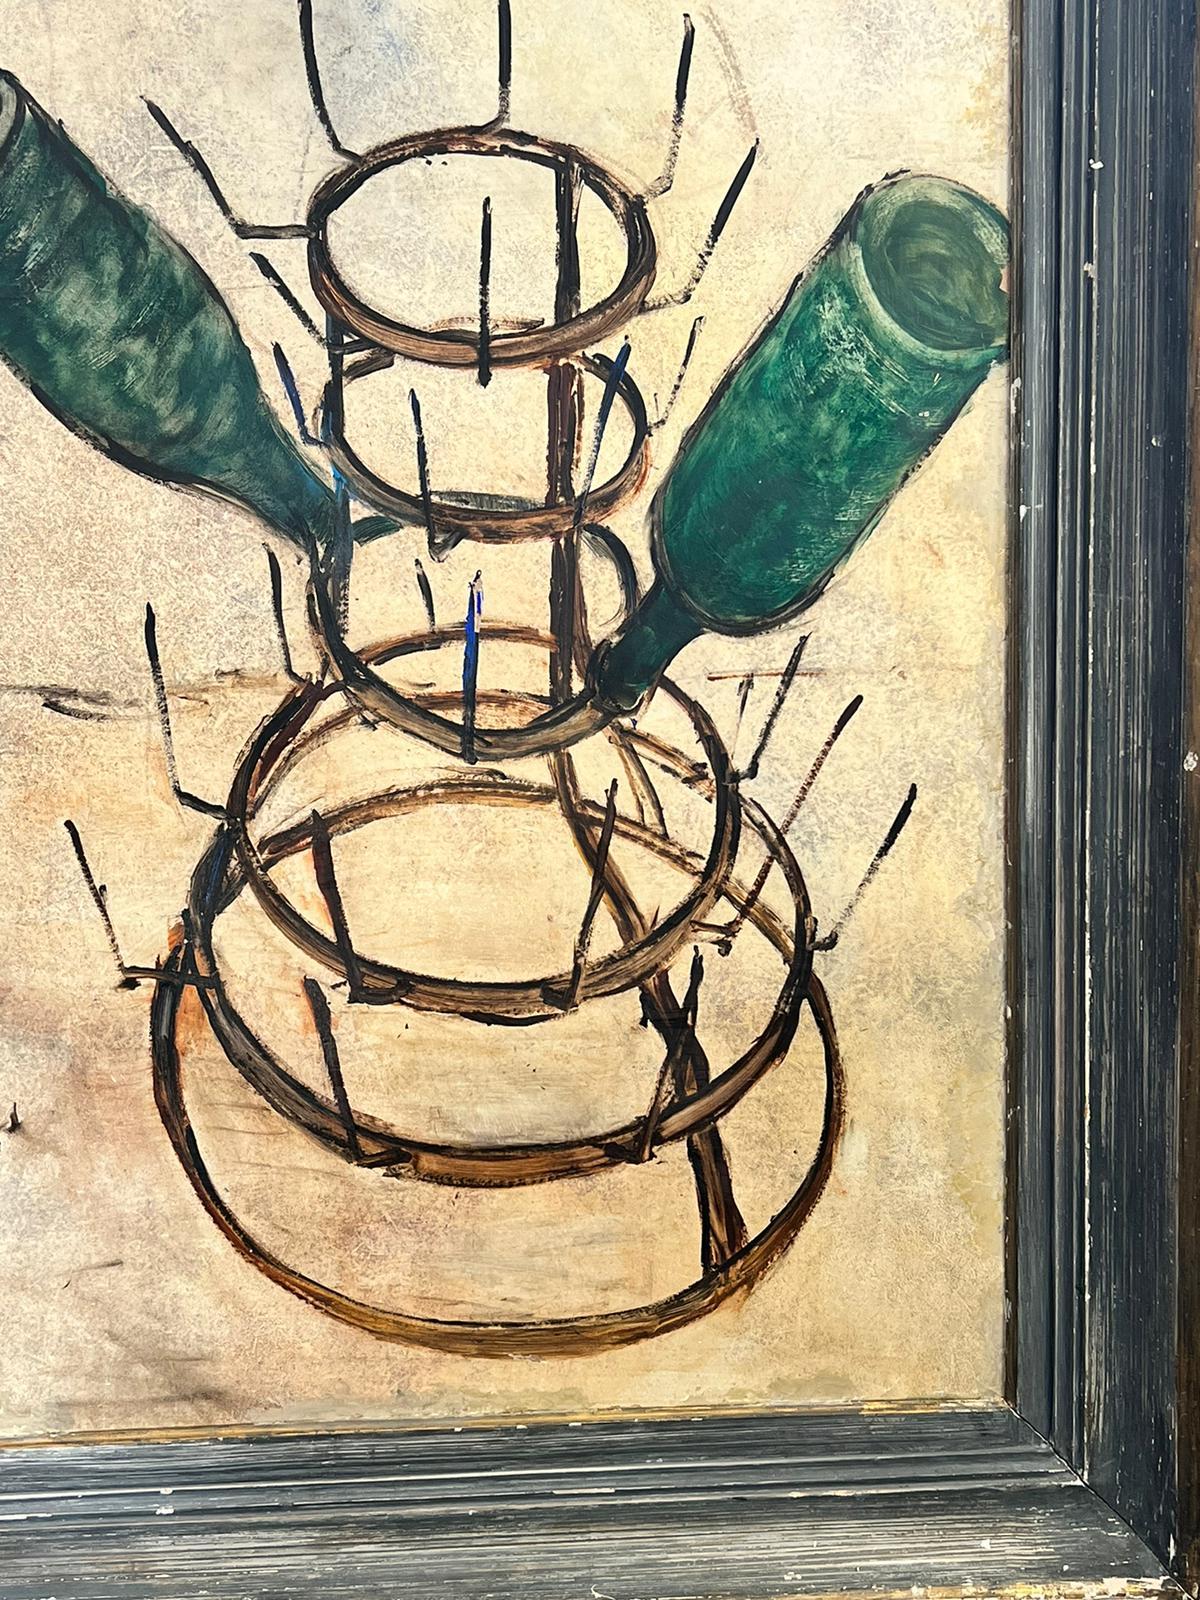 Bouteilles de vin à l'huile expressionniste française des années 1960 séchant sur un support métallique - Expressionniste Painting par Circle of Bernard Buffet